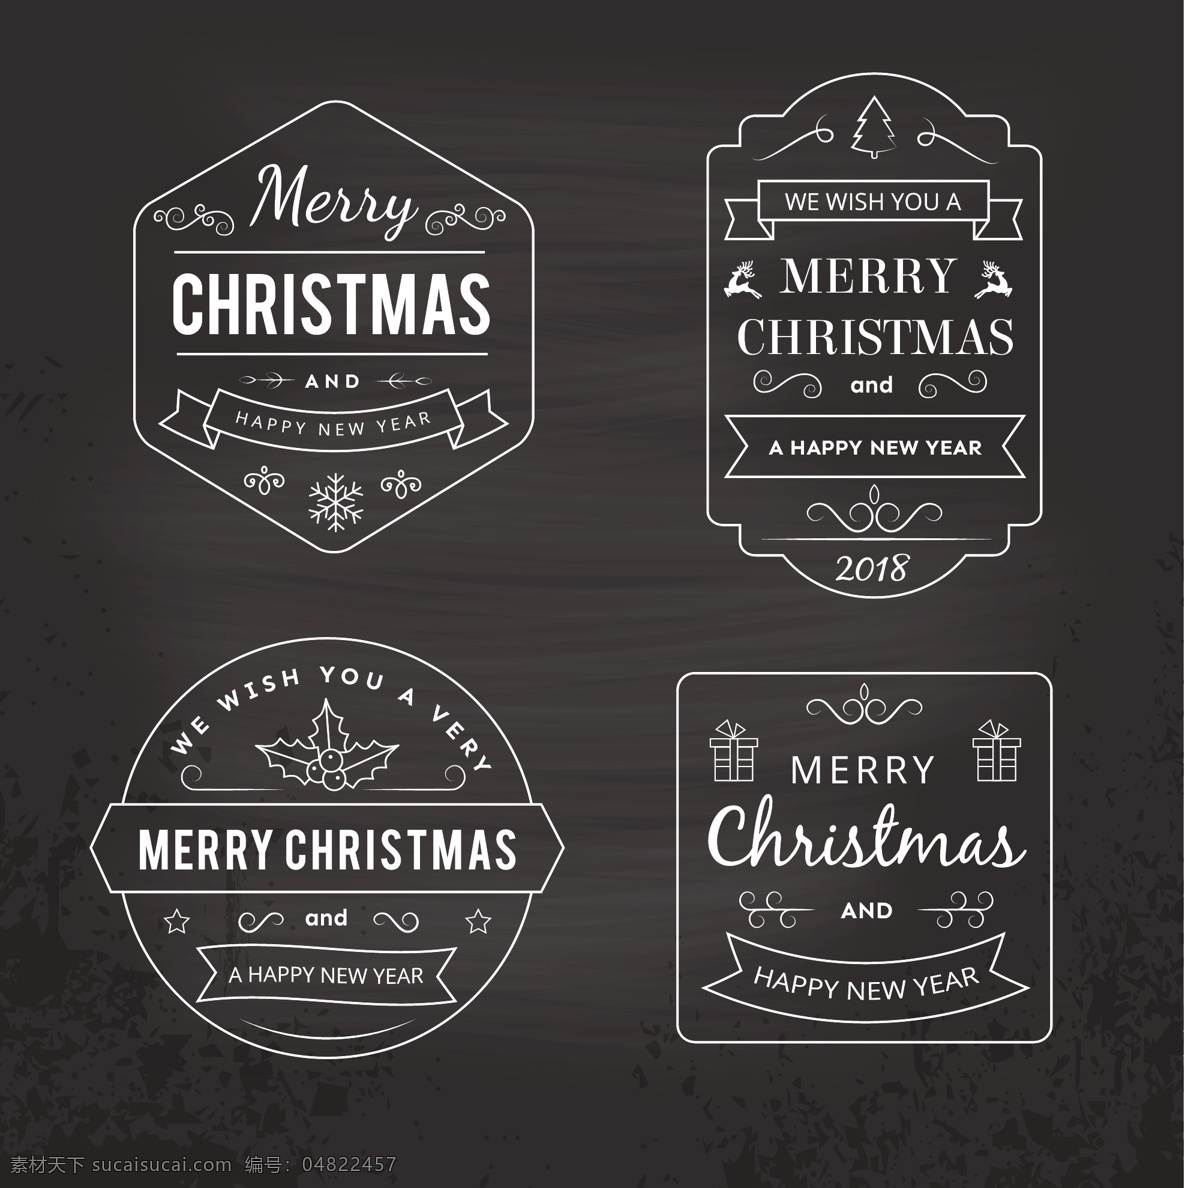 款 黑色 圣诞 创意 标签 圆形标签 圣诞庆典 圣诞标签 矢量标签 英文标签 节日 元素 eps素材 eps标签 圣诞节 节日元素 卡通圣诞元素 2018圣诞